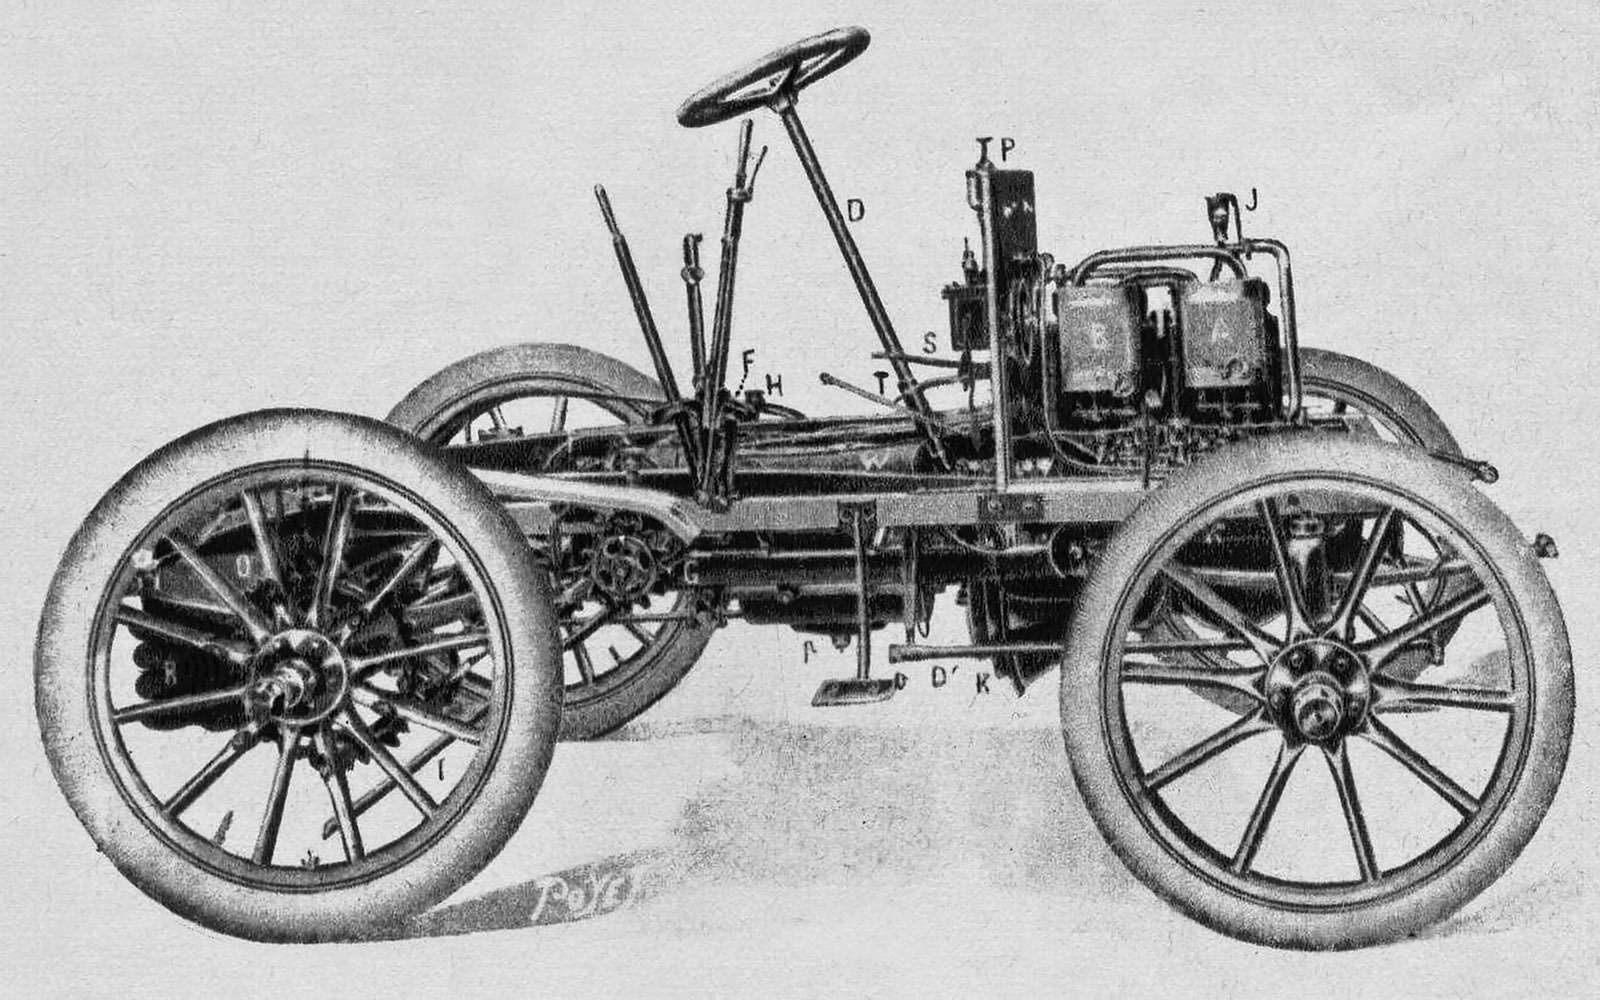 Шасси Панара: двигатель размещен спереди, ведущие колеса – задние. Позже такую компоновку стали называть классической.